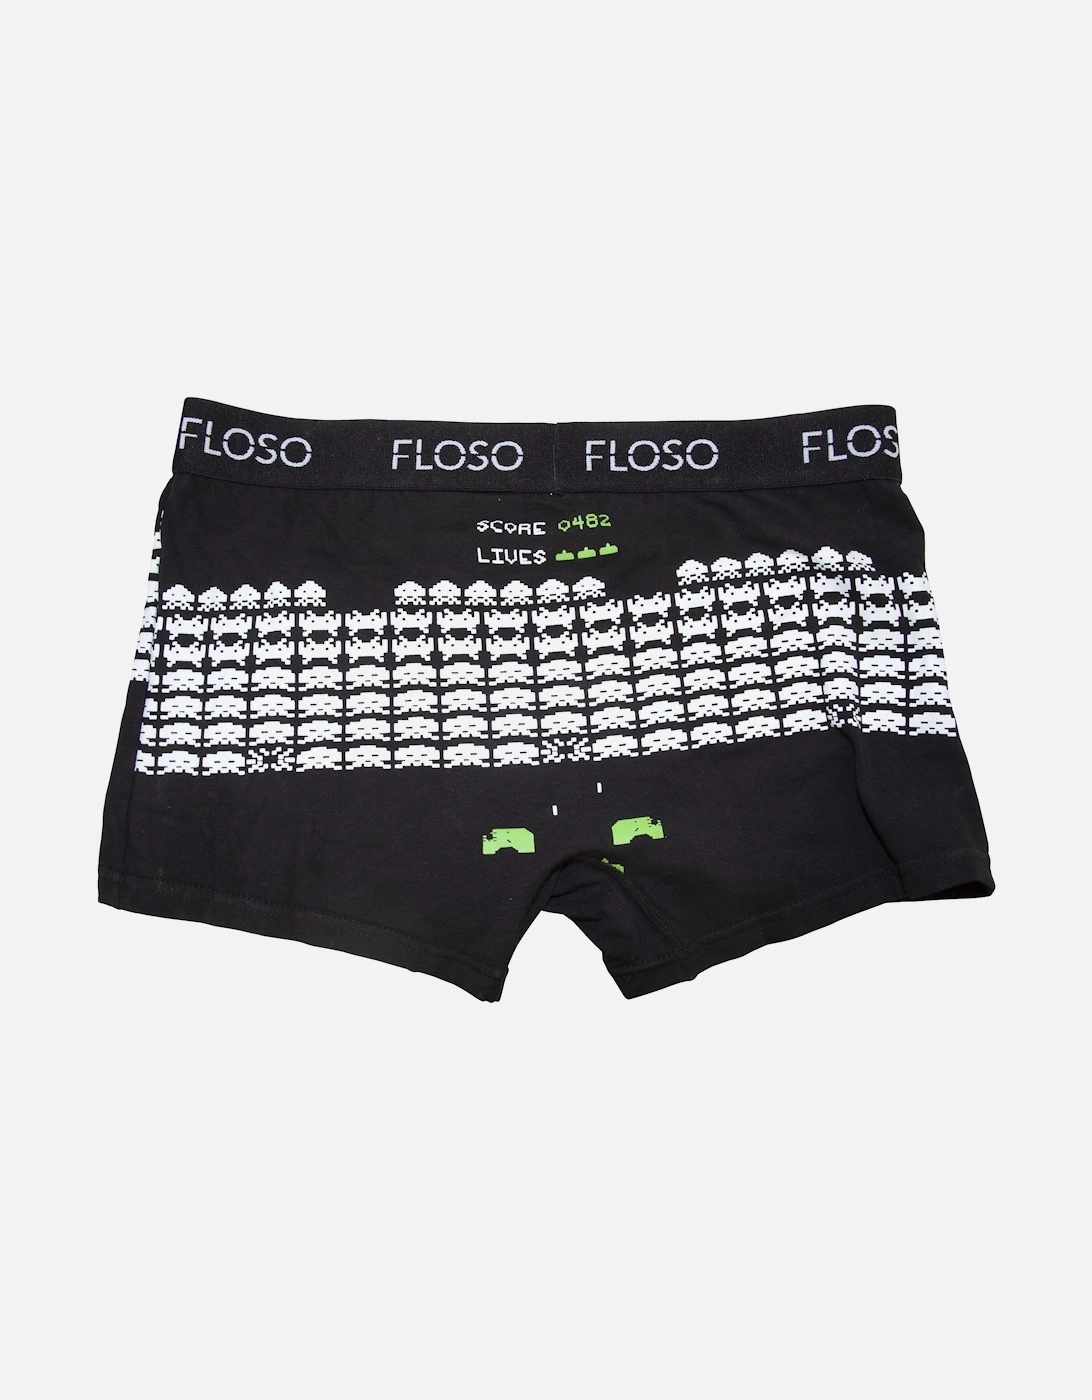 FLOSO Mens Retro Games Boxer Shorts (5 Pairs)